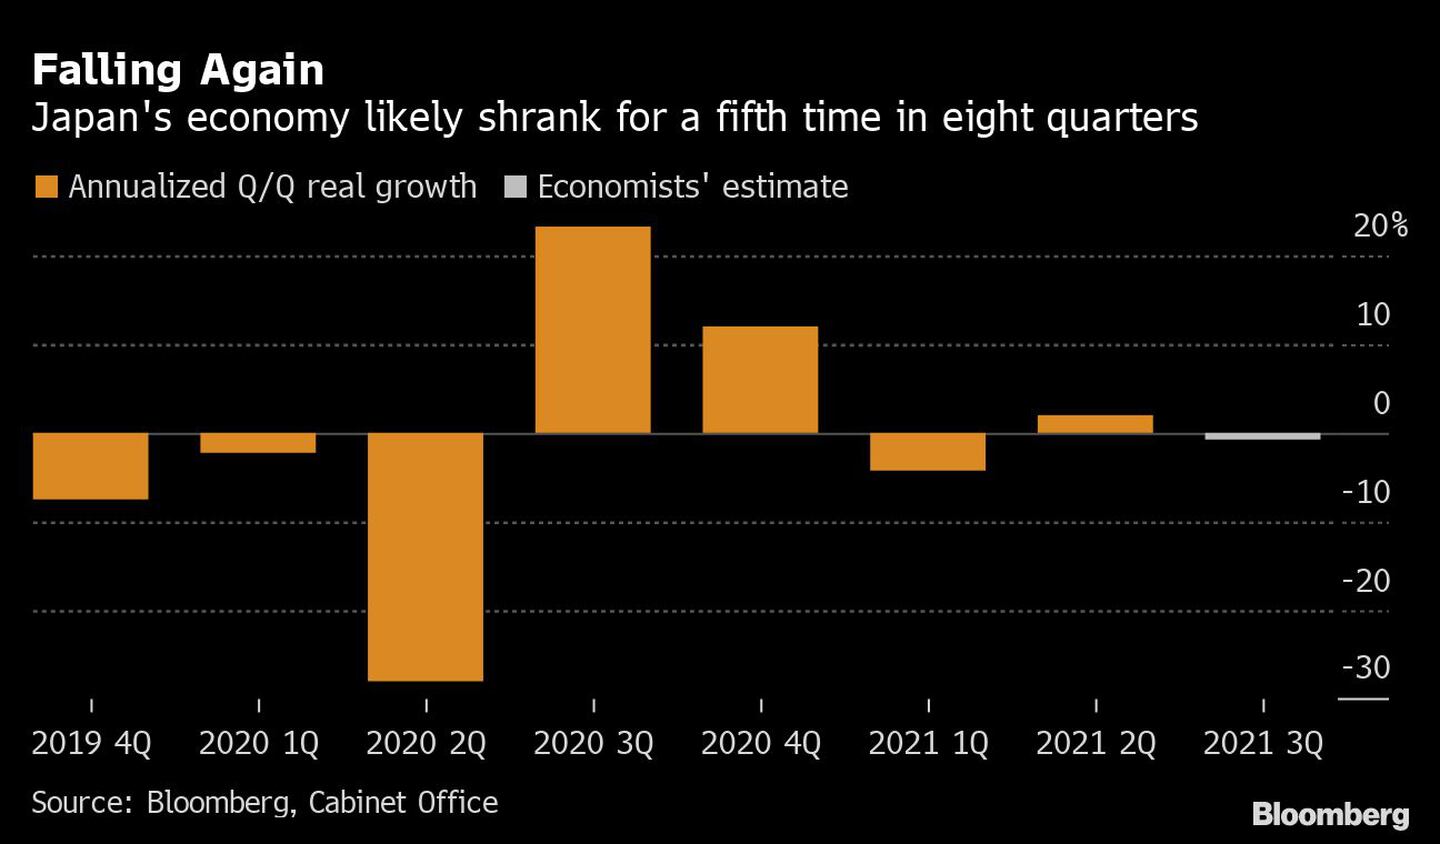 La economía japonesa se contrae por quinta vez en ocho trimestres.dfd